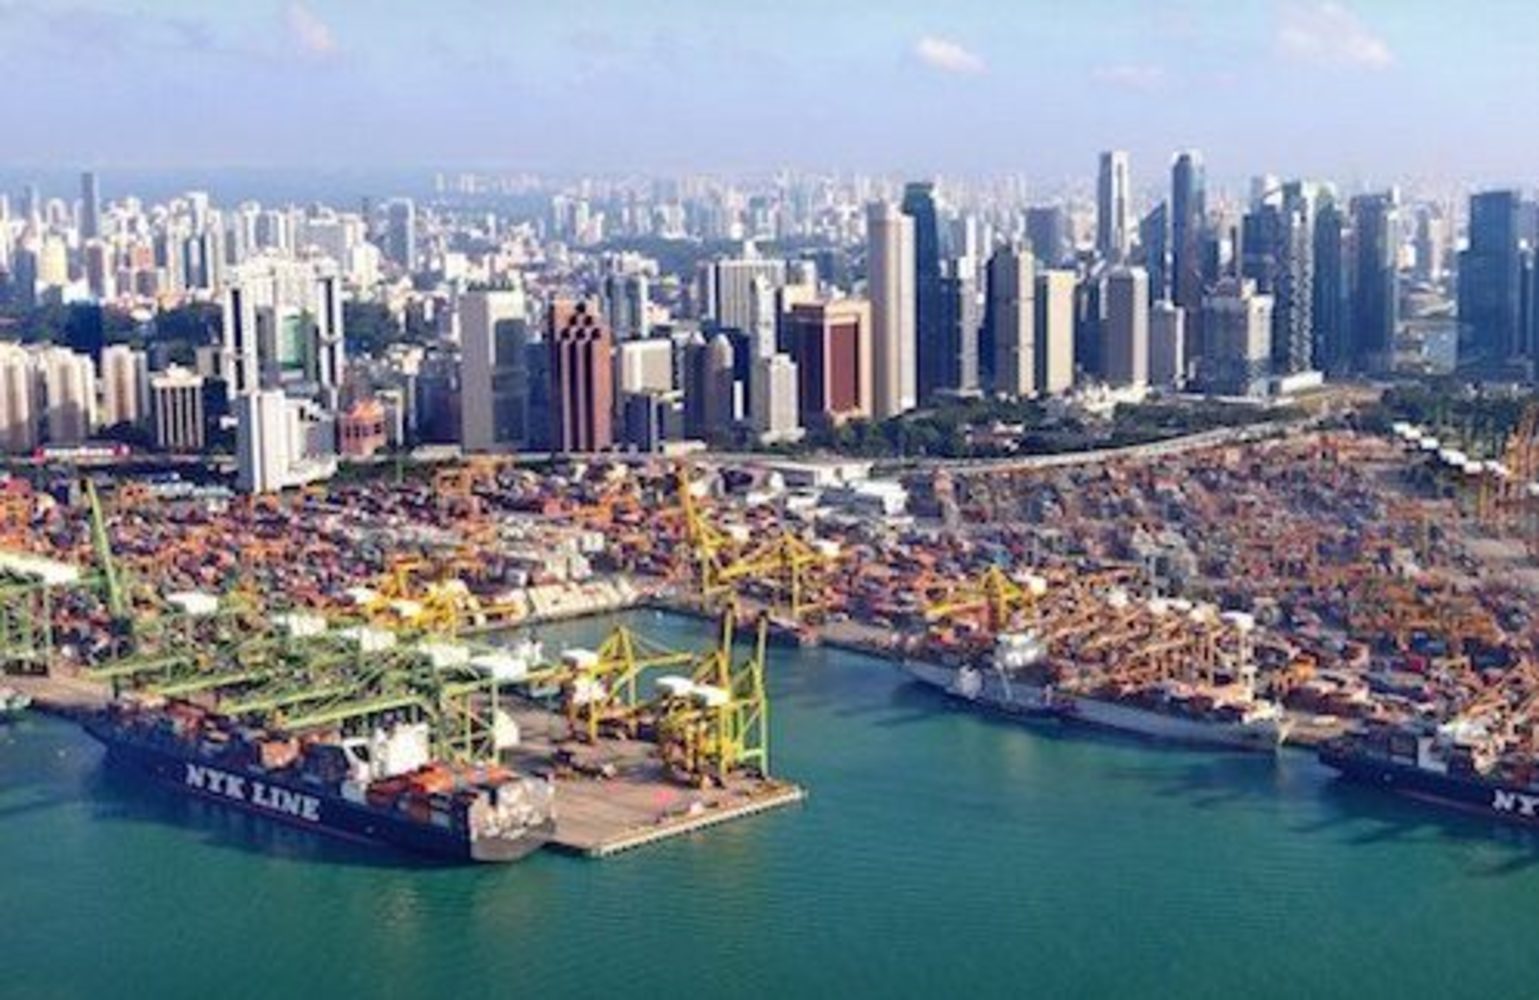 Singapore Port 4 E1596012957825